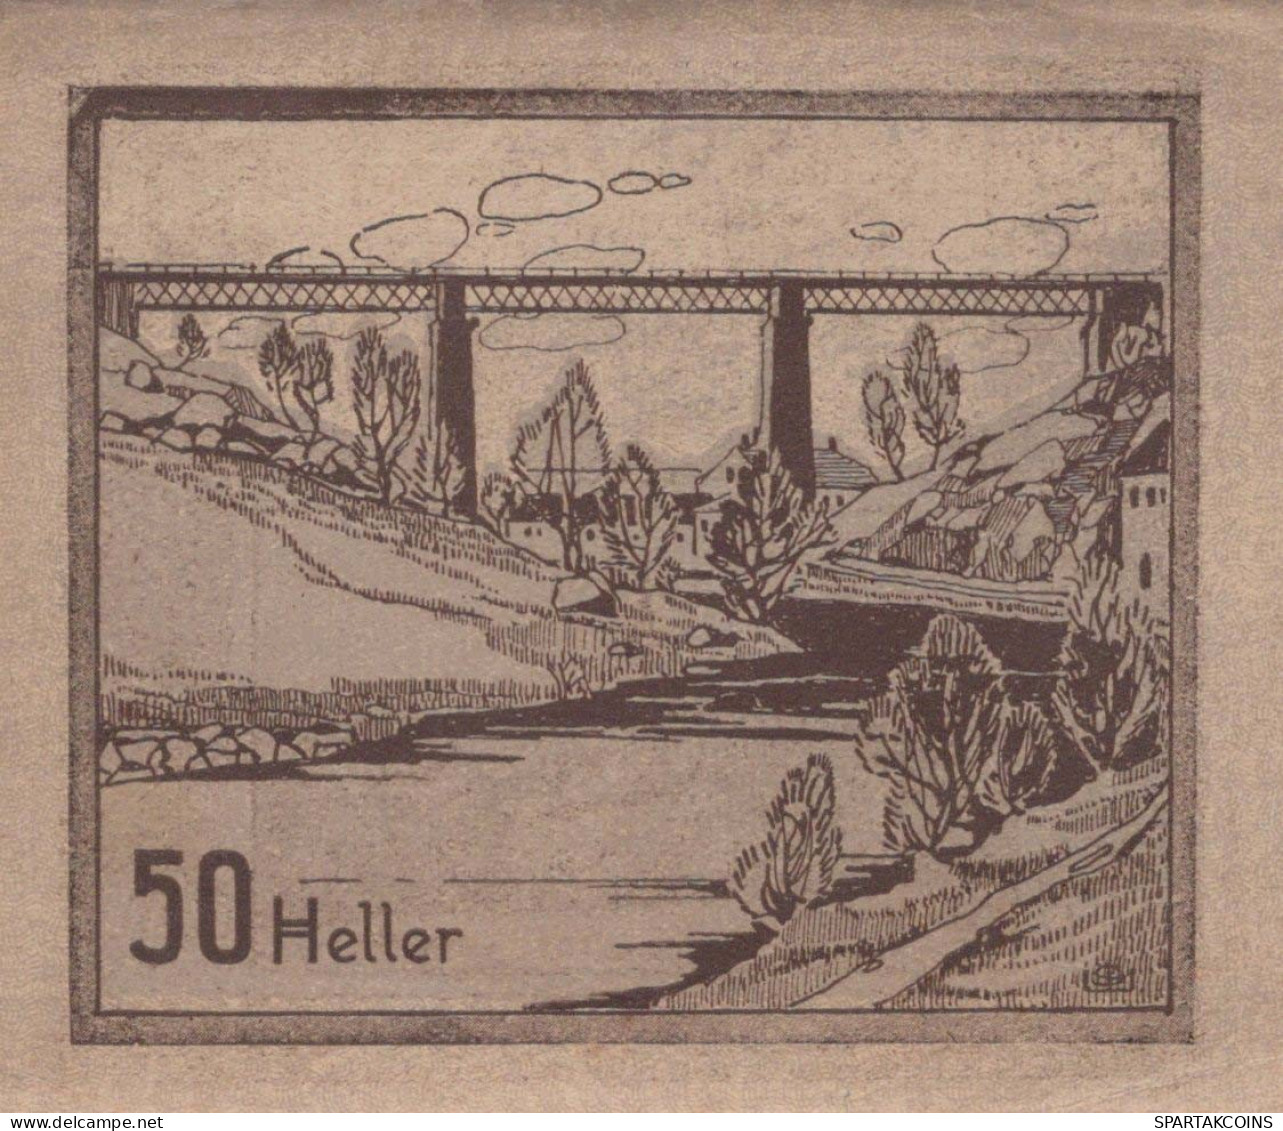 50 HELLER 1920 Stadt Prägraten In Tirol Österreich Notgeld Banknote #PE456 - [11] Emissions Locales